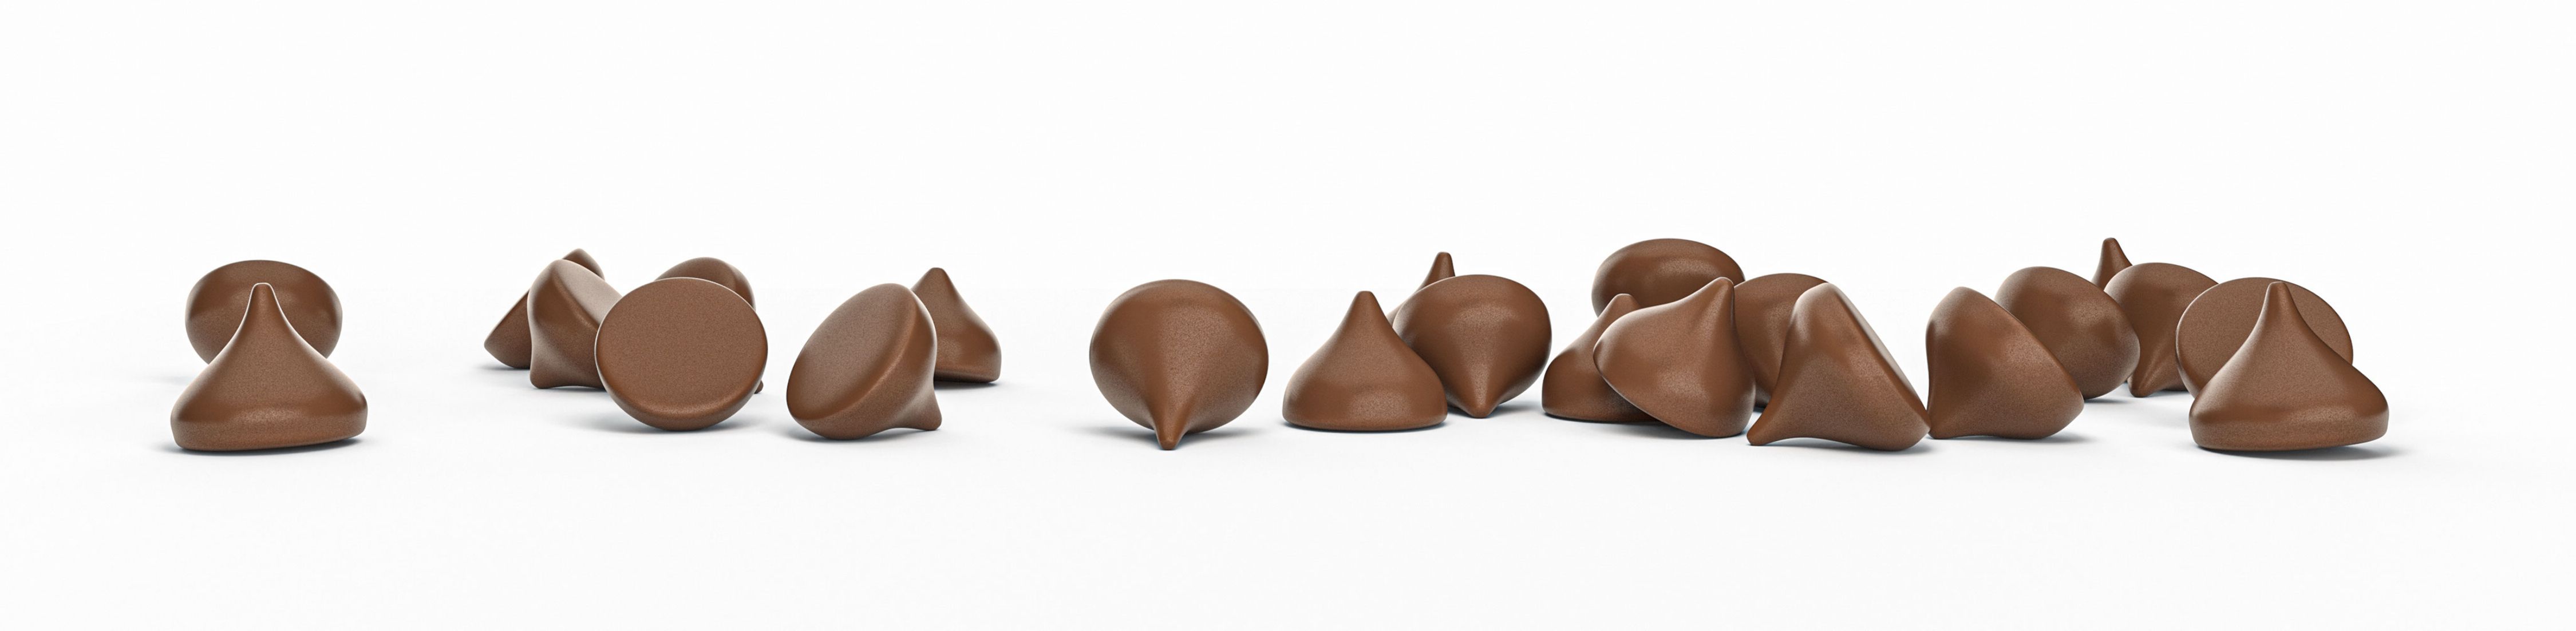 Pépites de chocolat noir 72% bio & équitable VRAC RHD - 5 kg